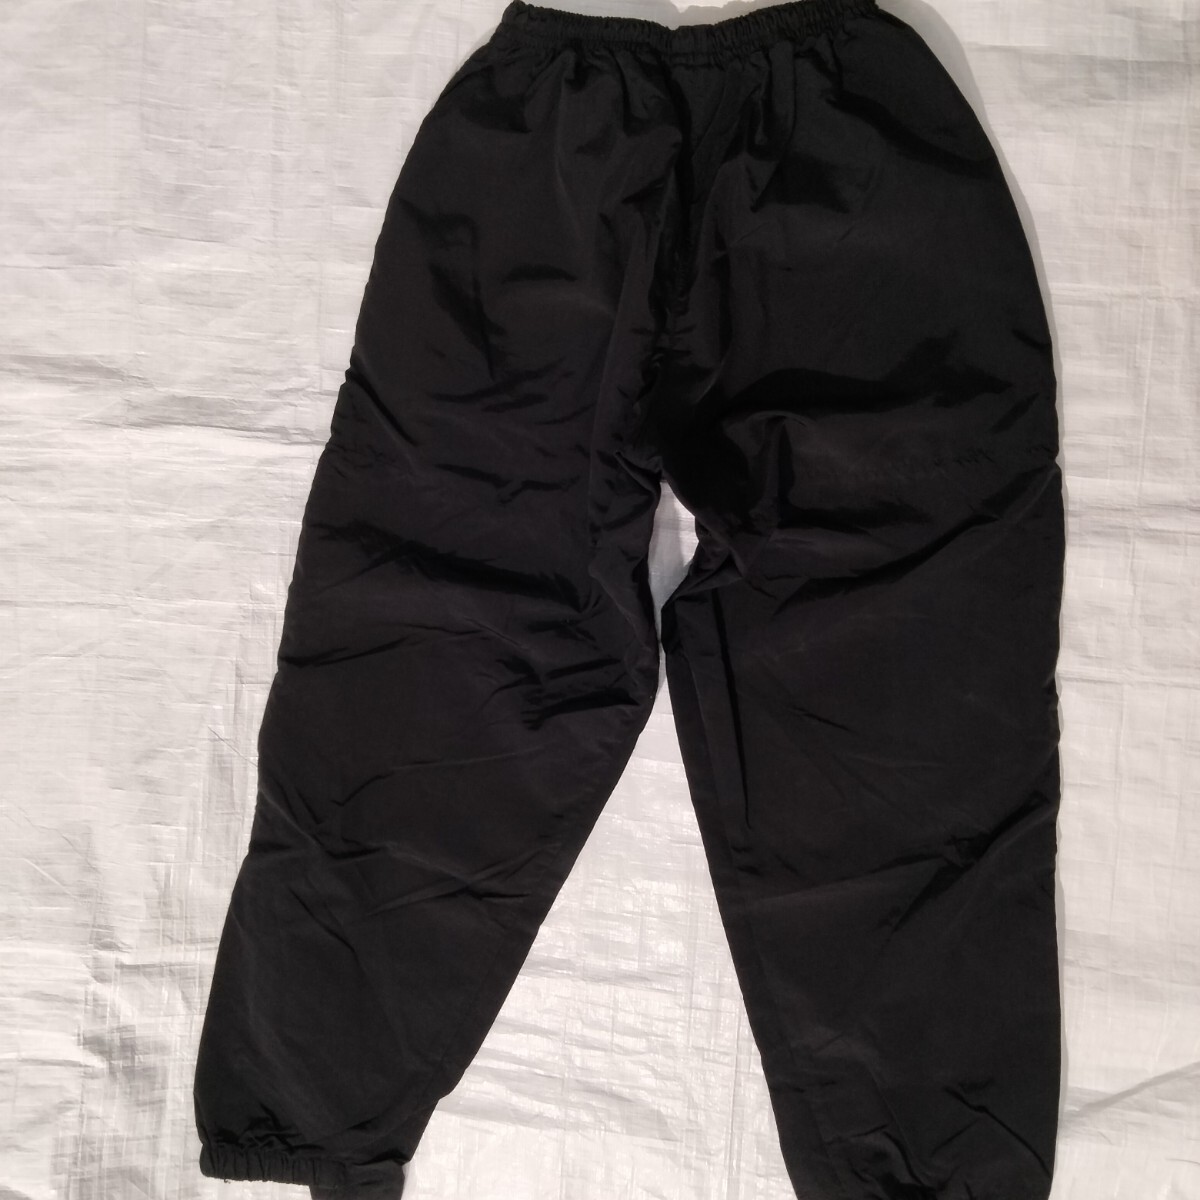 US military APFU nylon pants ARMYトレーニングパンツ アメリカ軍 米軍実物 ミリタリー small short black 黒 ブラック 男女兼 の画像9